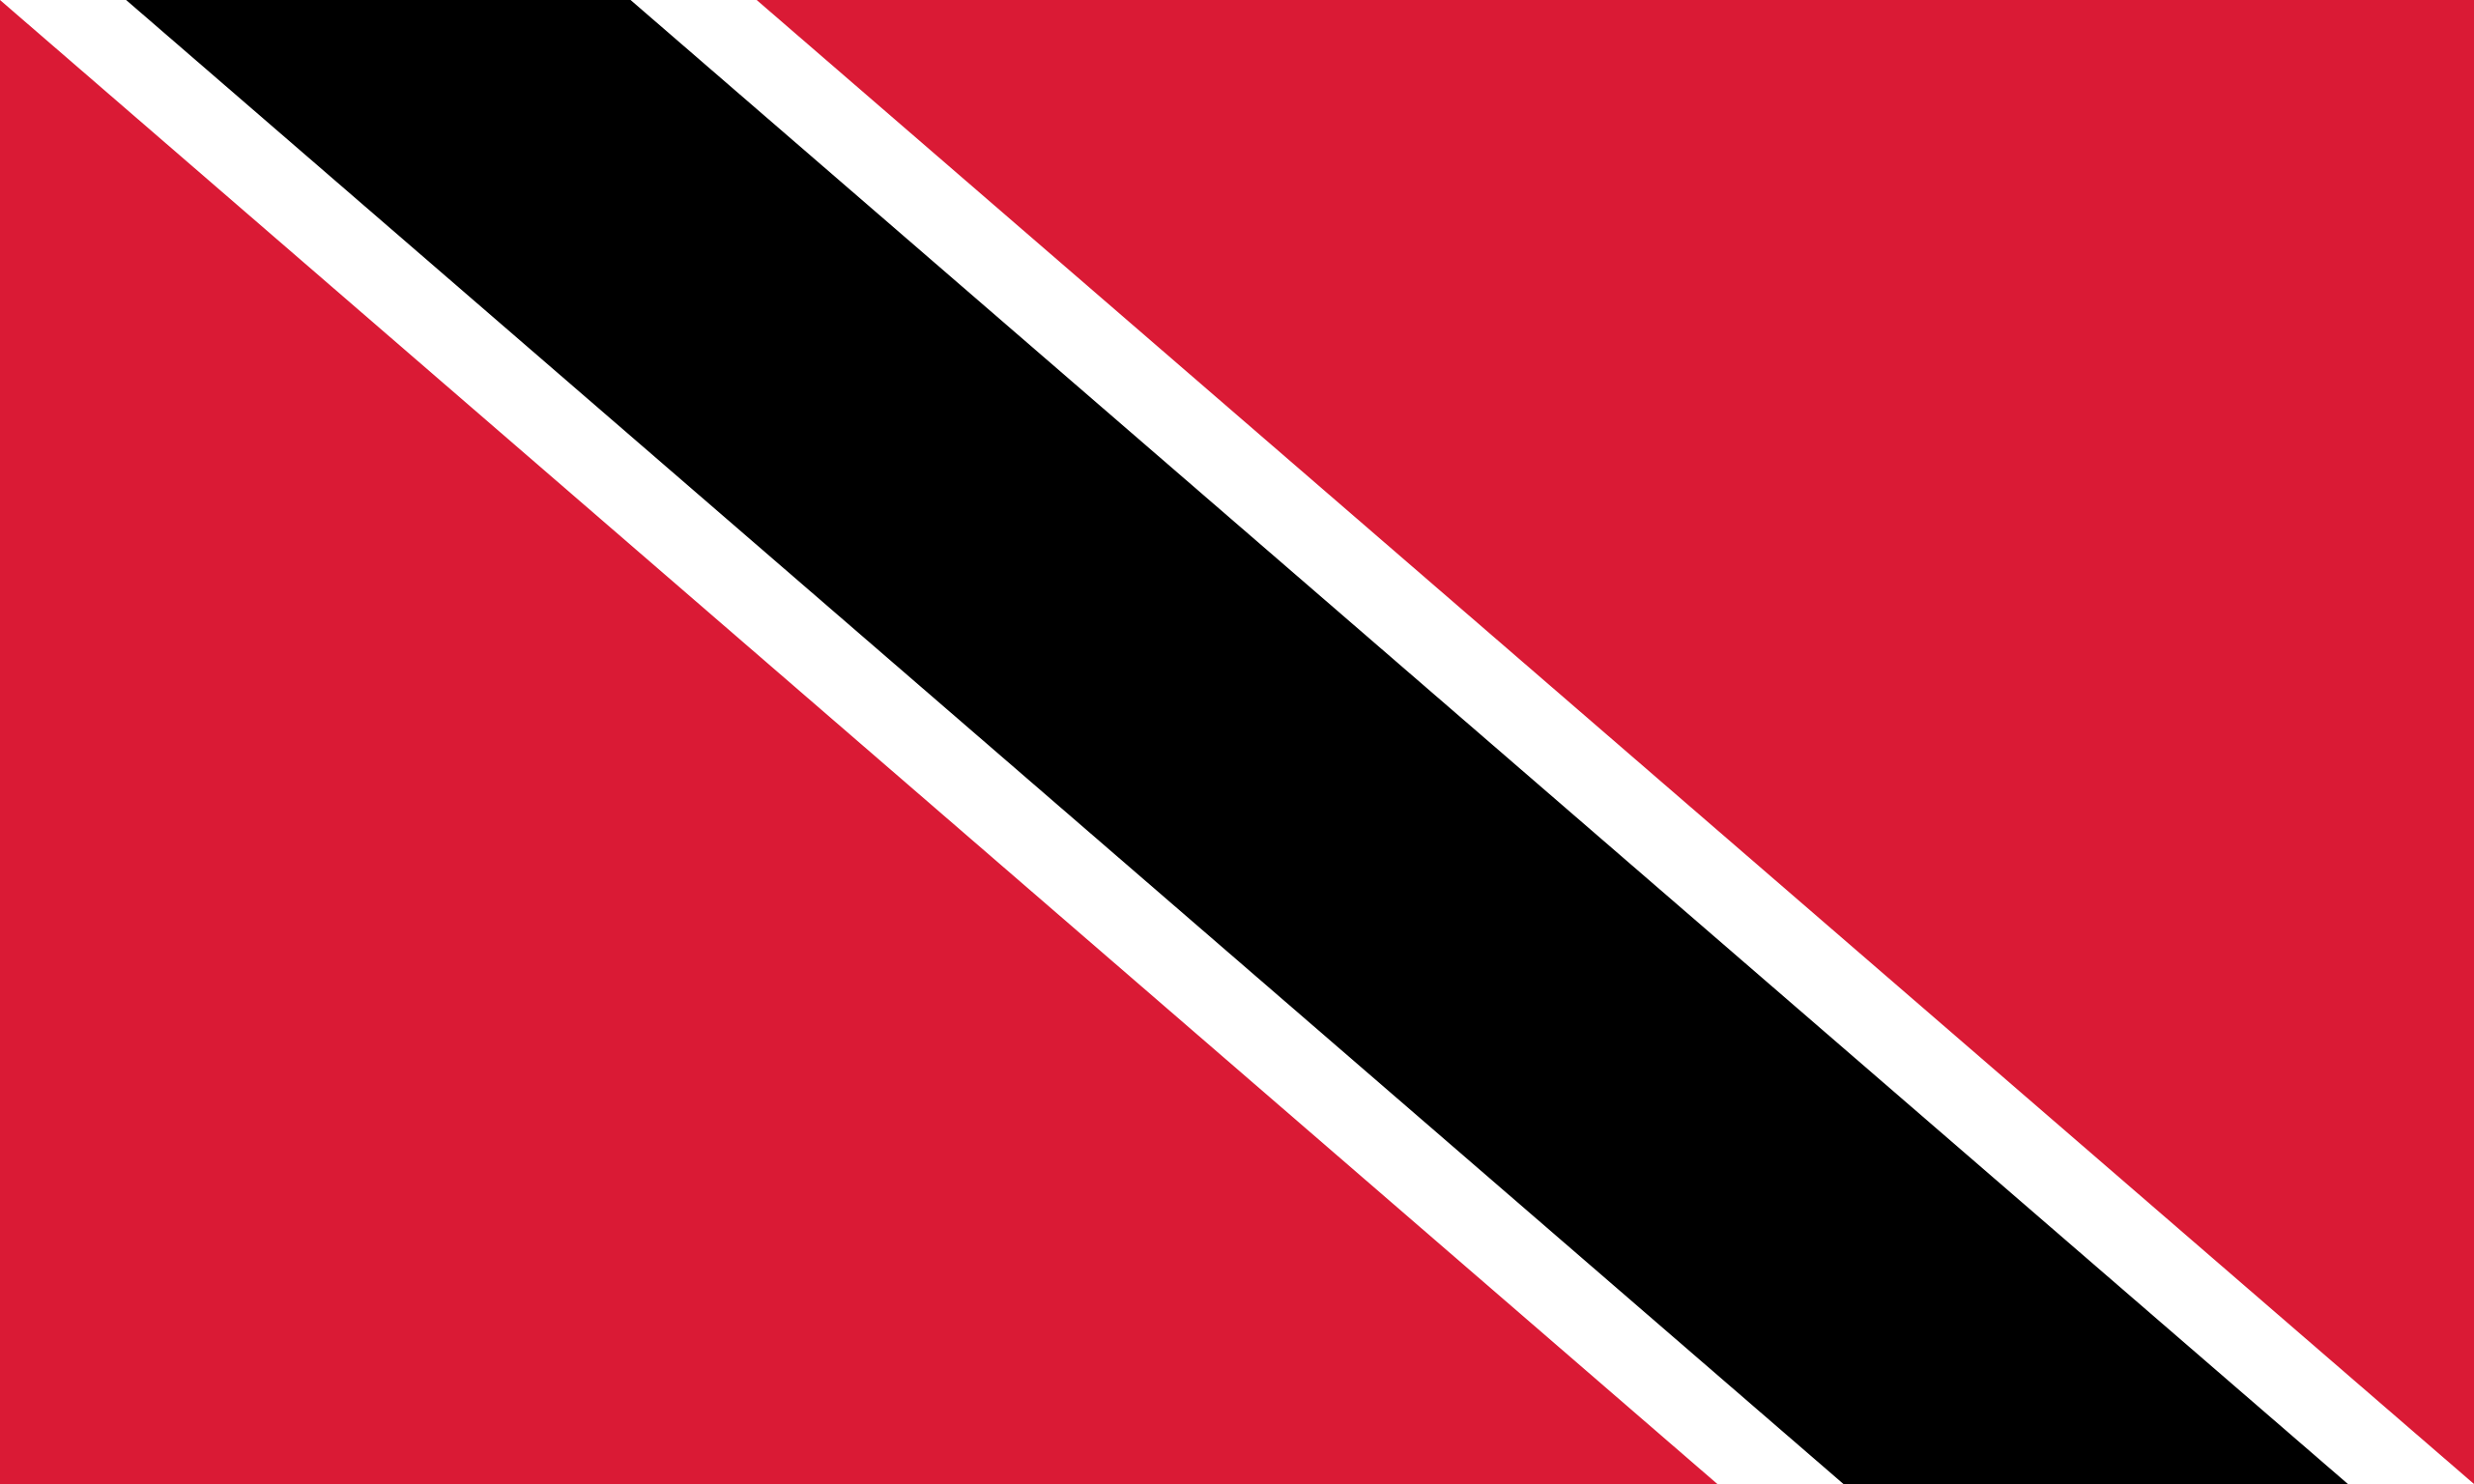 Flag_of_Trinidad_and_Tobago.svg